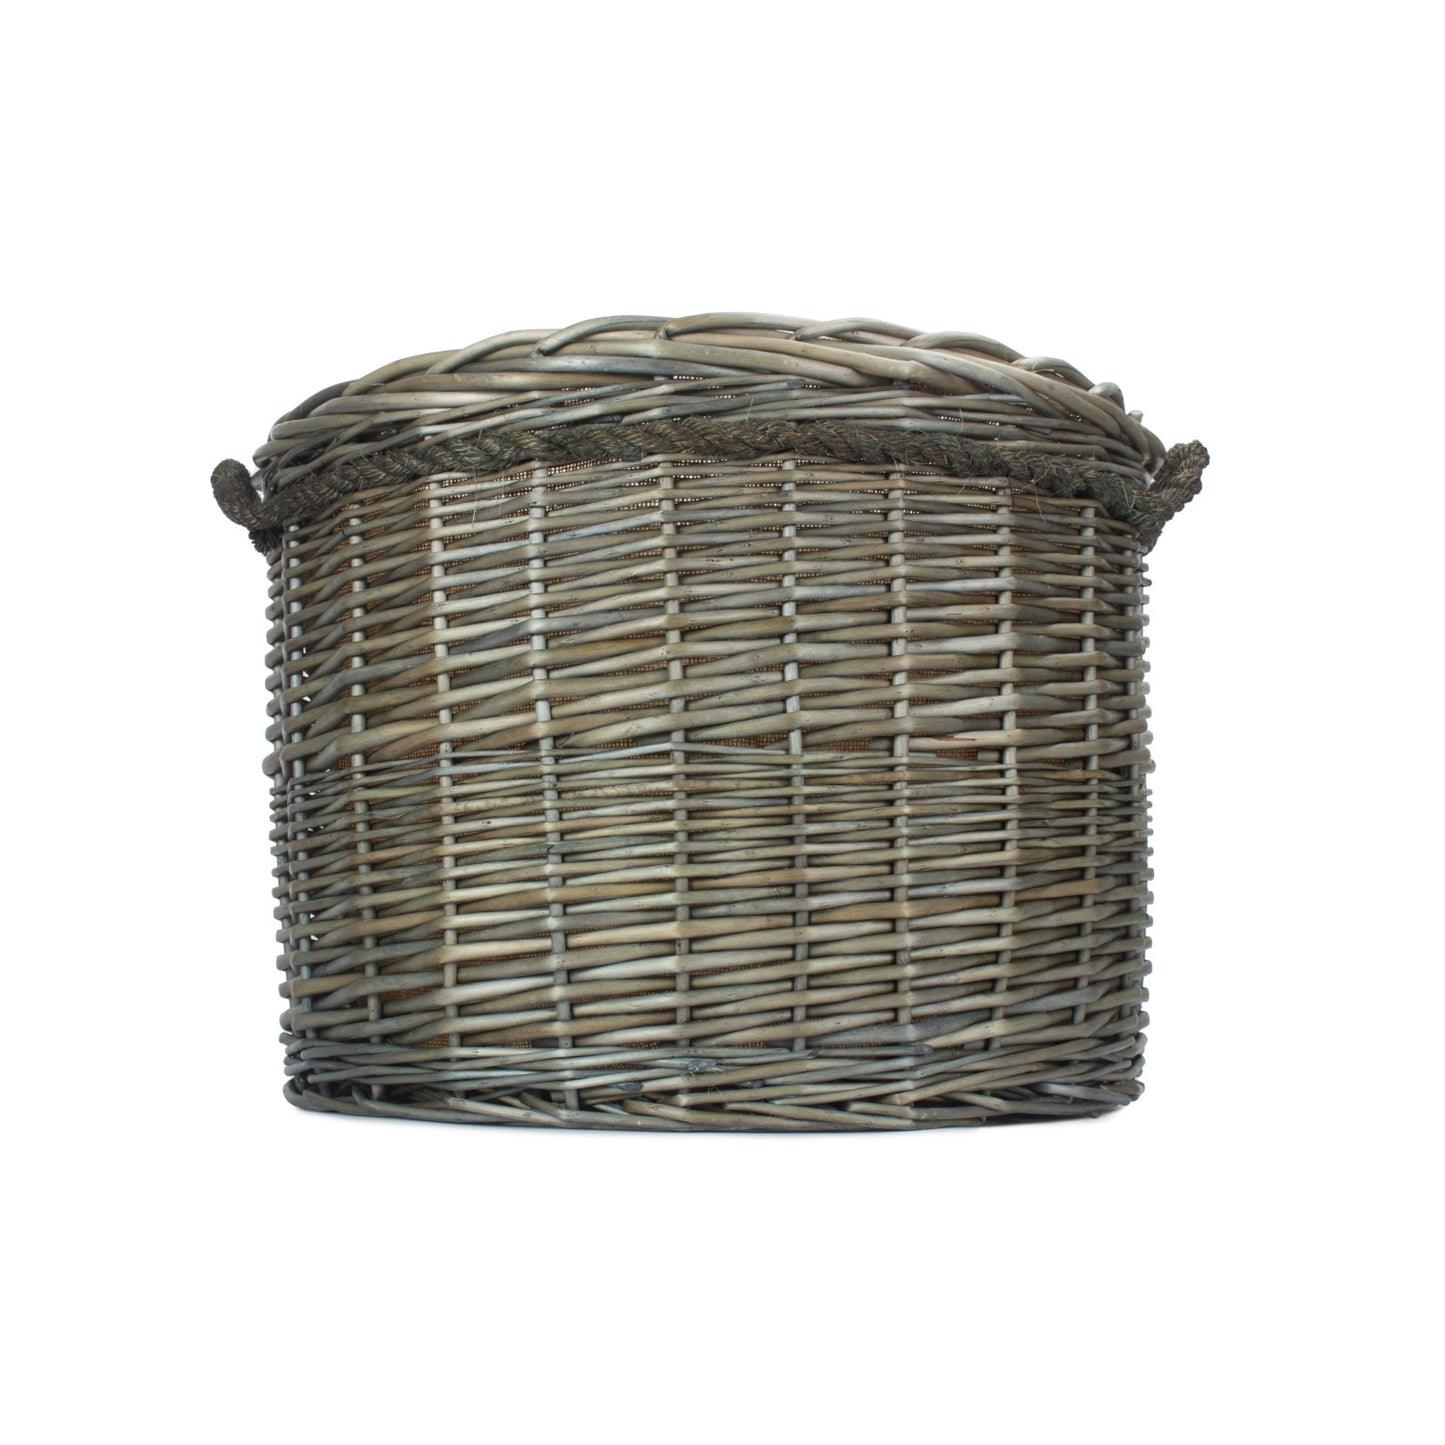 Size 2 Antique Wash Round Storage Basket